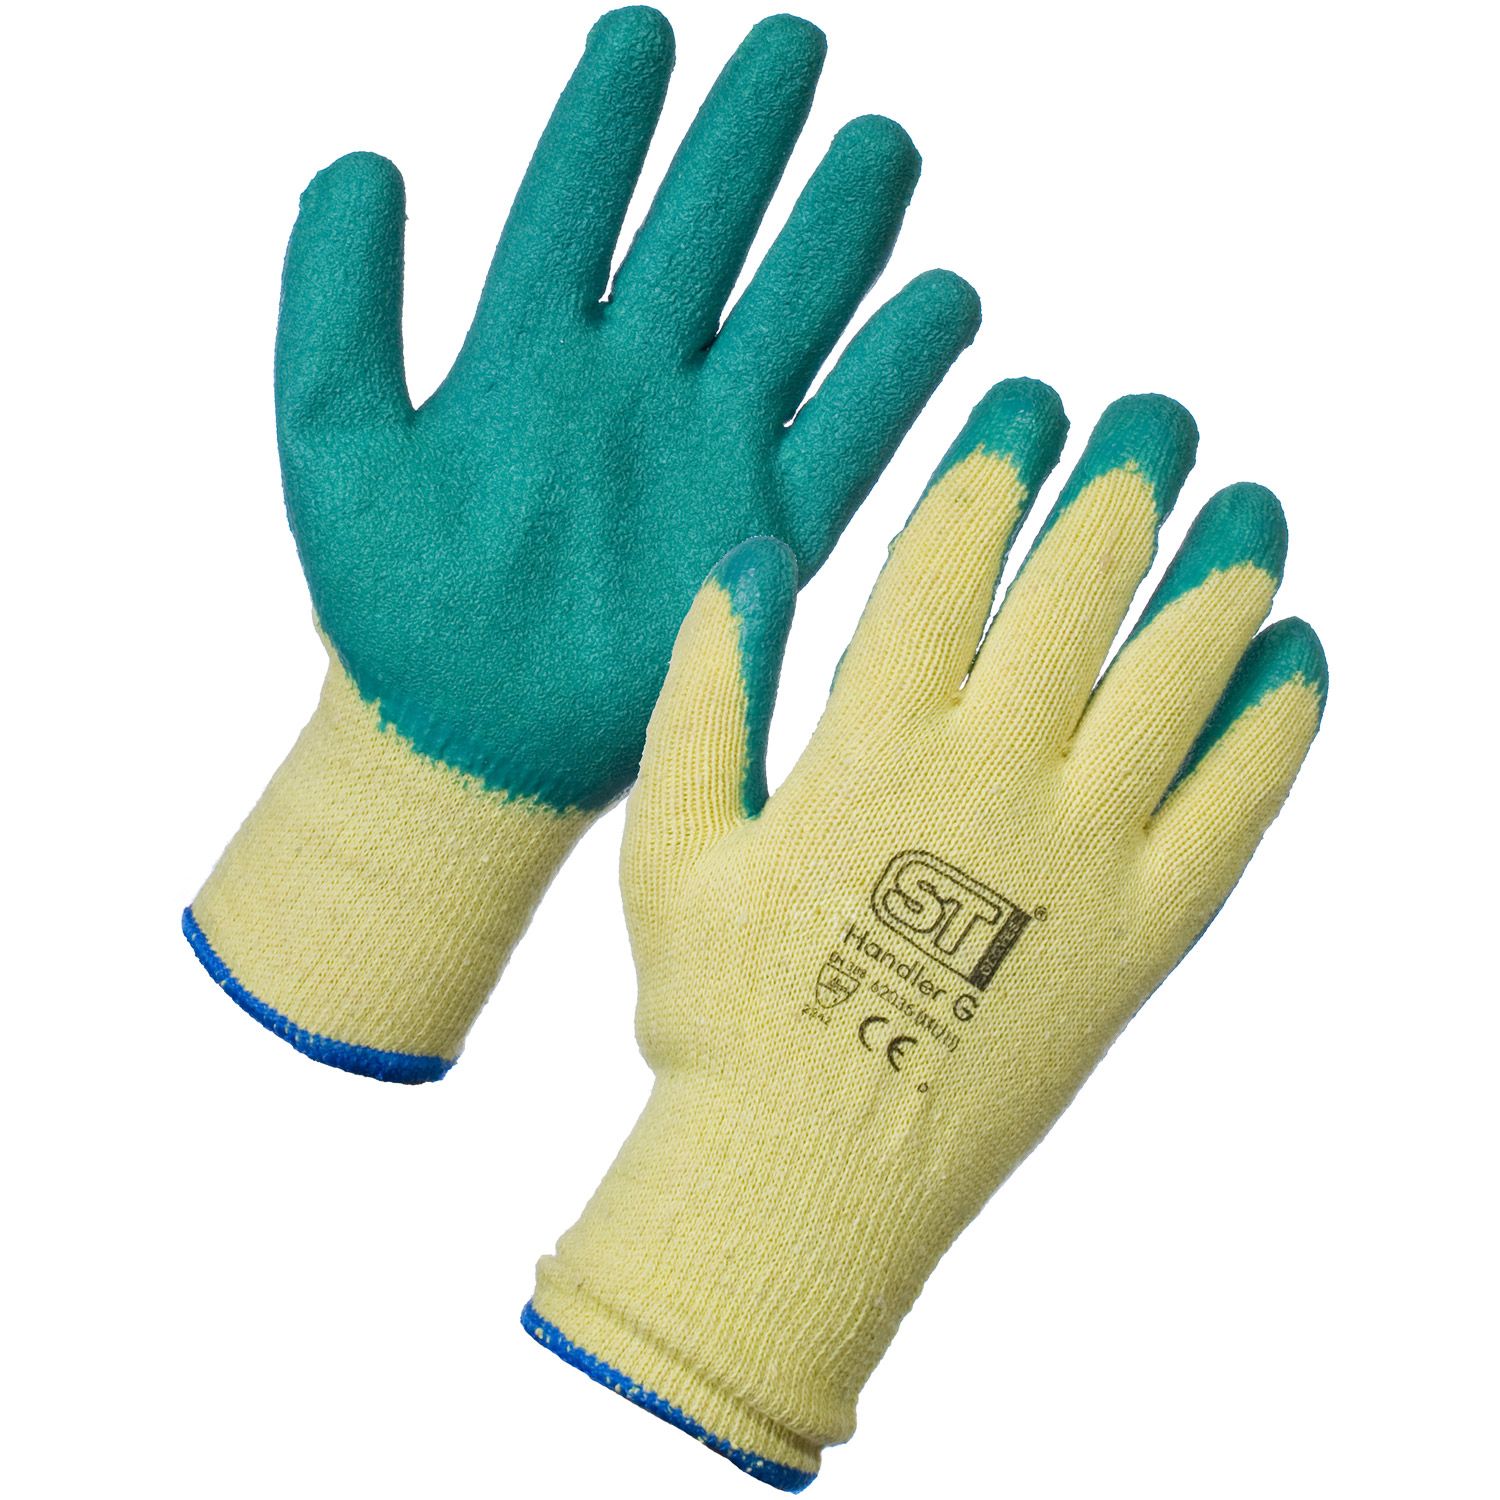 General Handler Glove - Large - 12 Pack